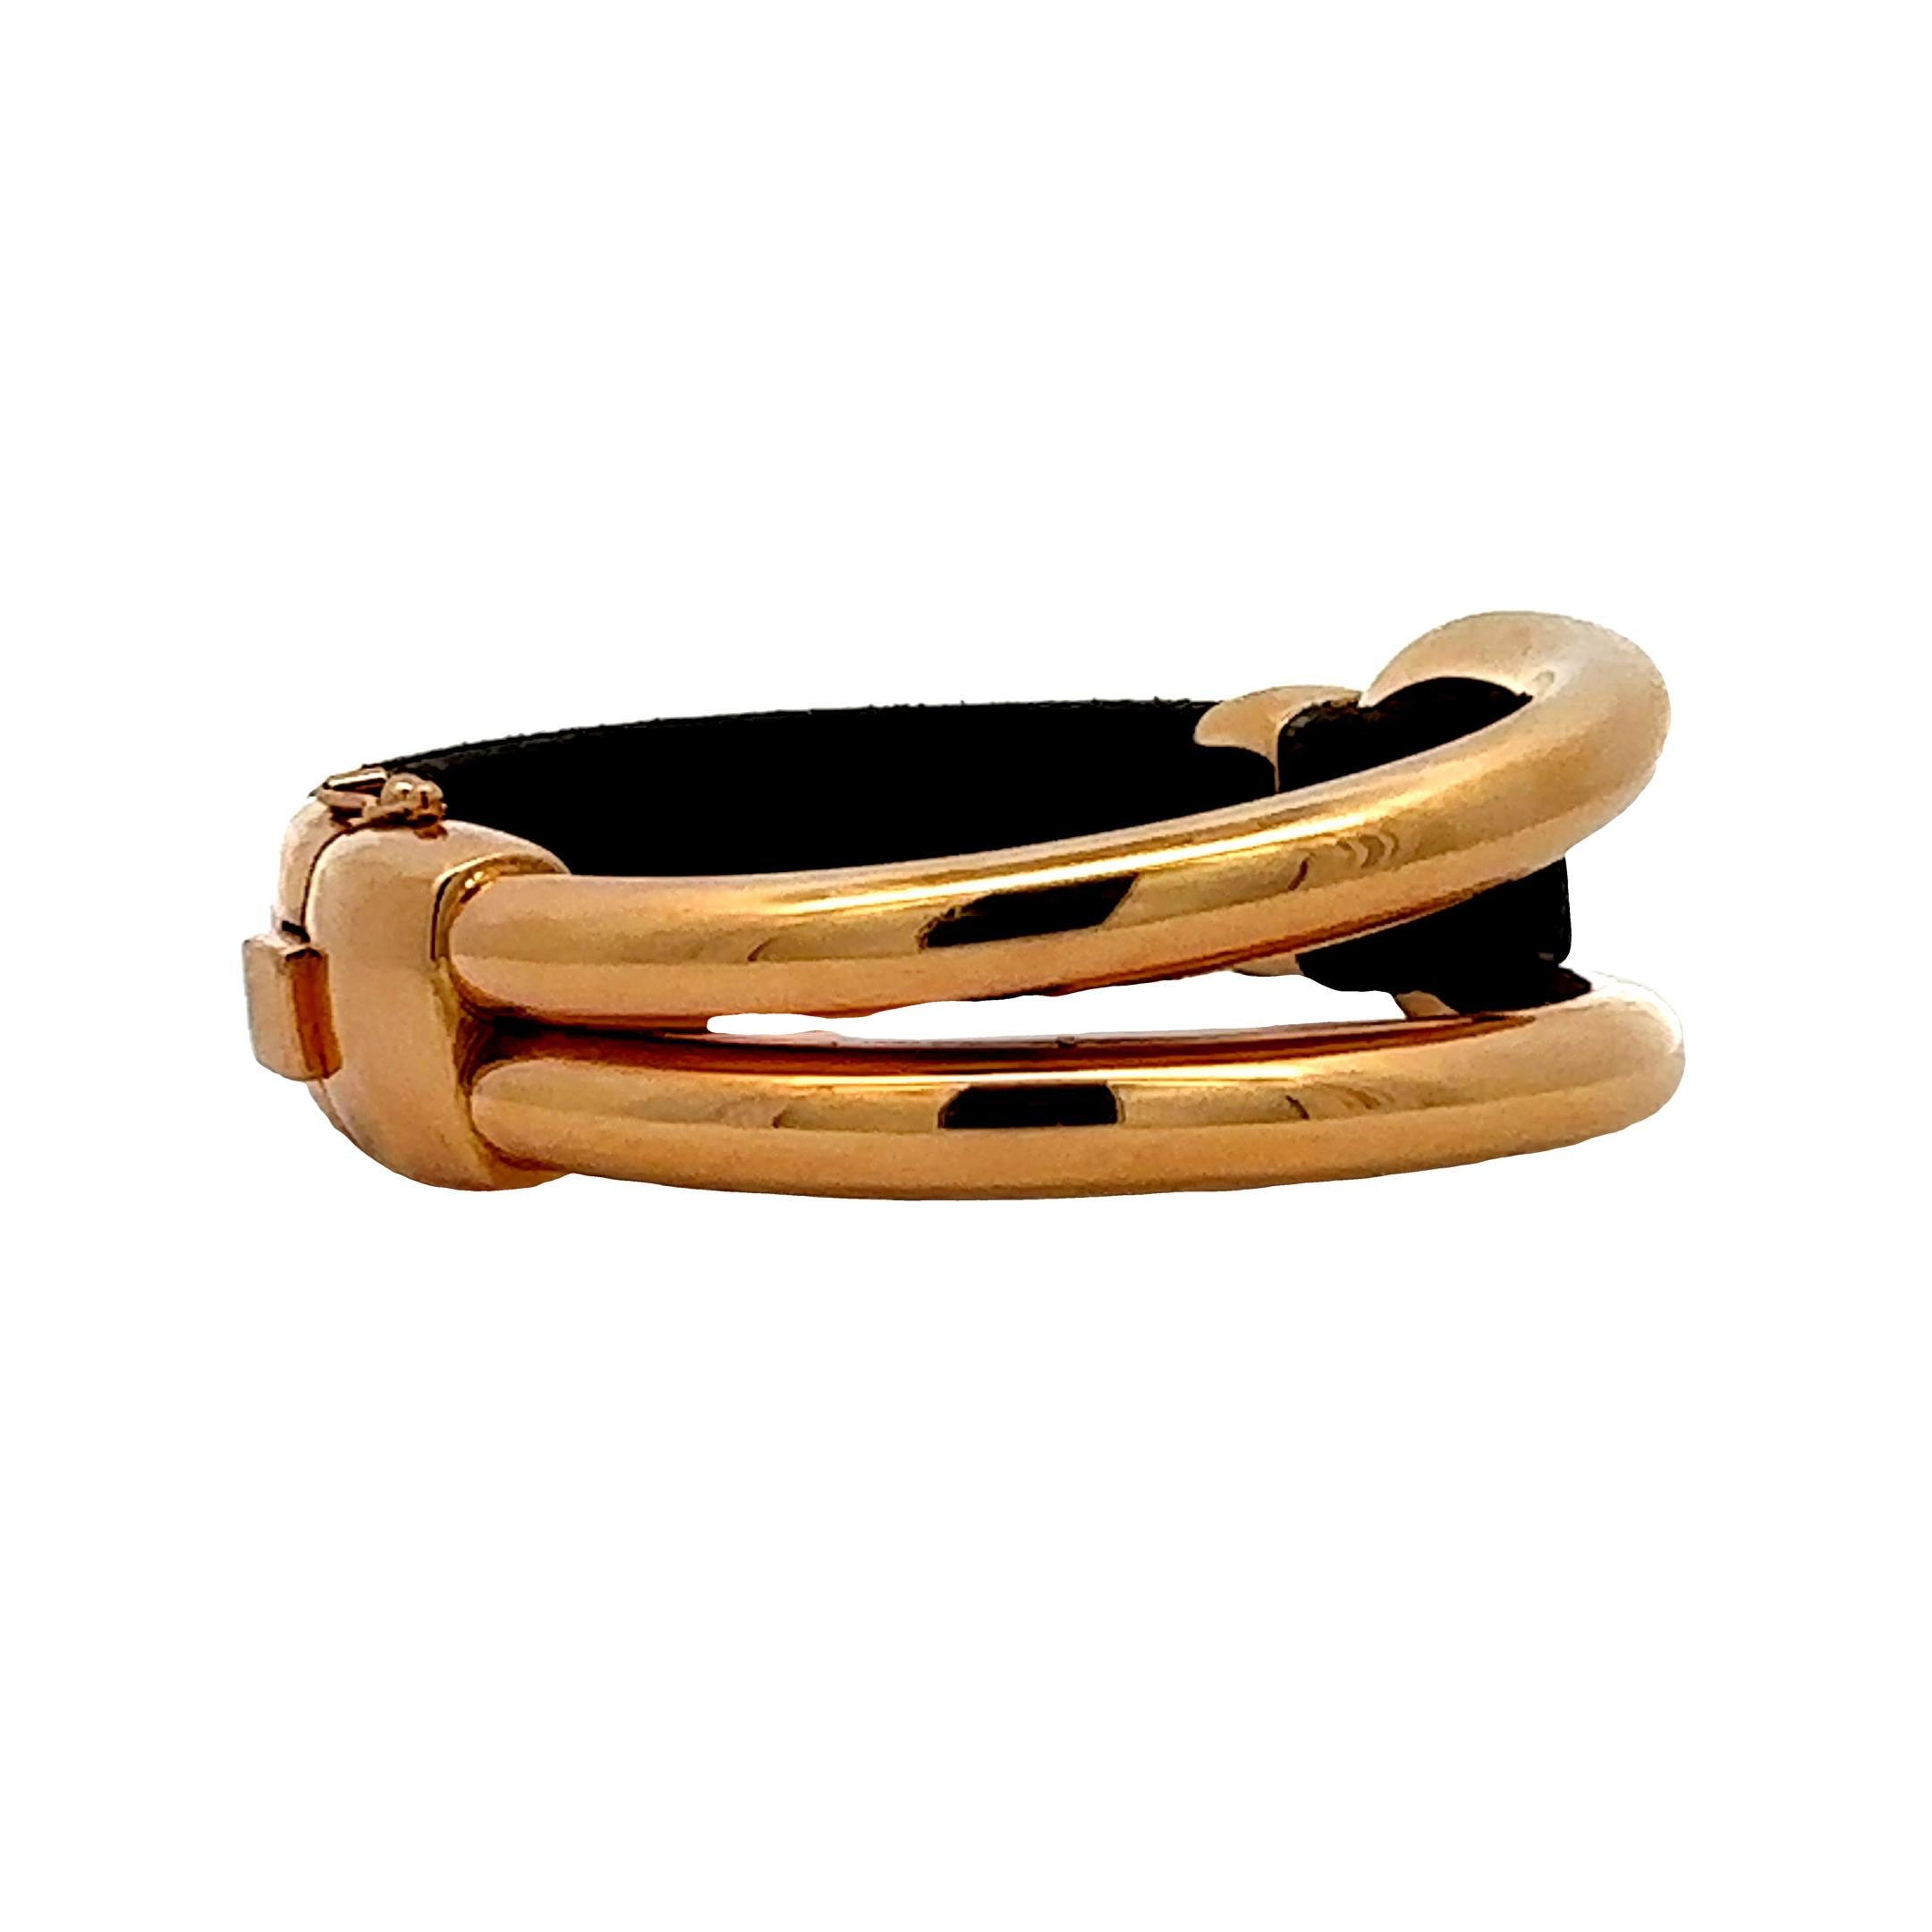 Oromalia Armband aus Italien, angeboten von Alex & Co. Dieses modische Armband zeichnet sich durch ein ovales, röhrenförmiges Mittelstück in Roségold aus, das 26 Gramm wiegt. Die Uhr ist mit einem braunen Naturlederarmband mit roségoldenem Akzent